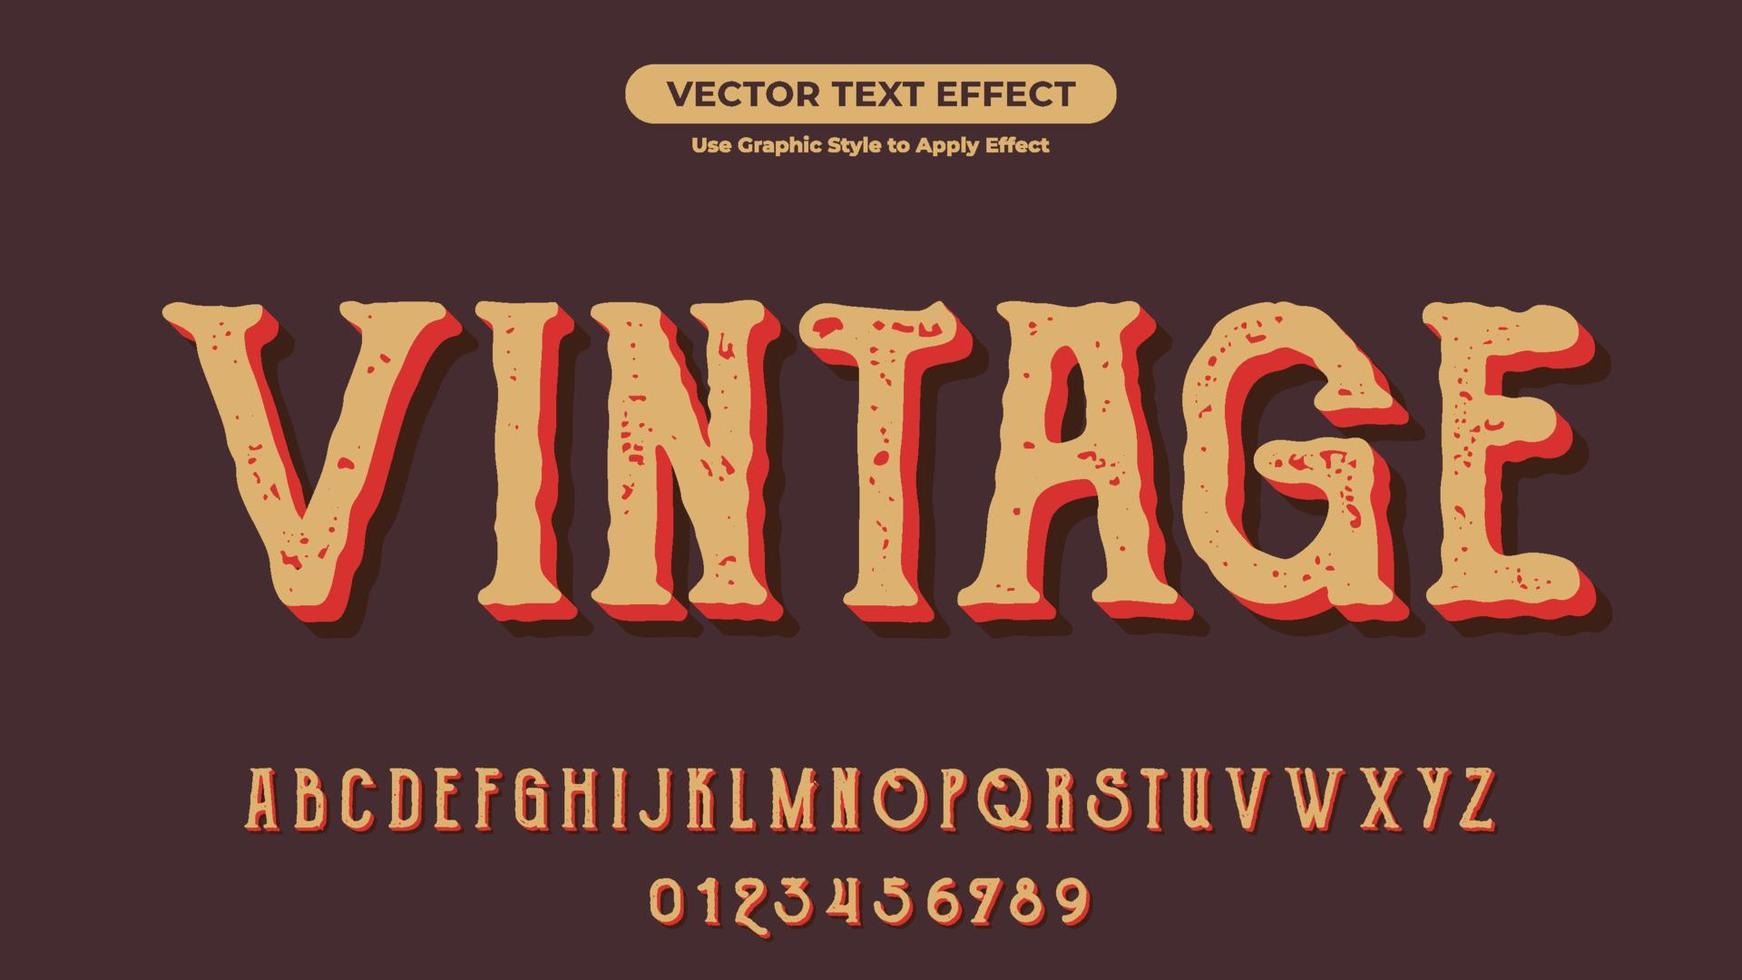 efecto de texto editable 3d vintage con estilo retro y vintage vector